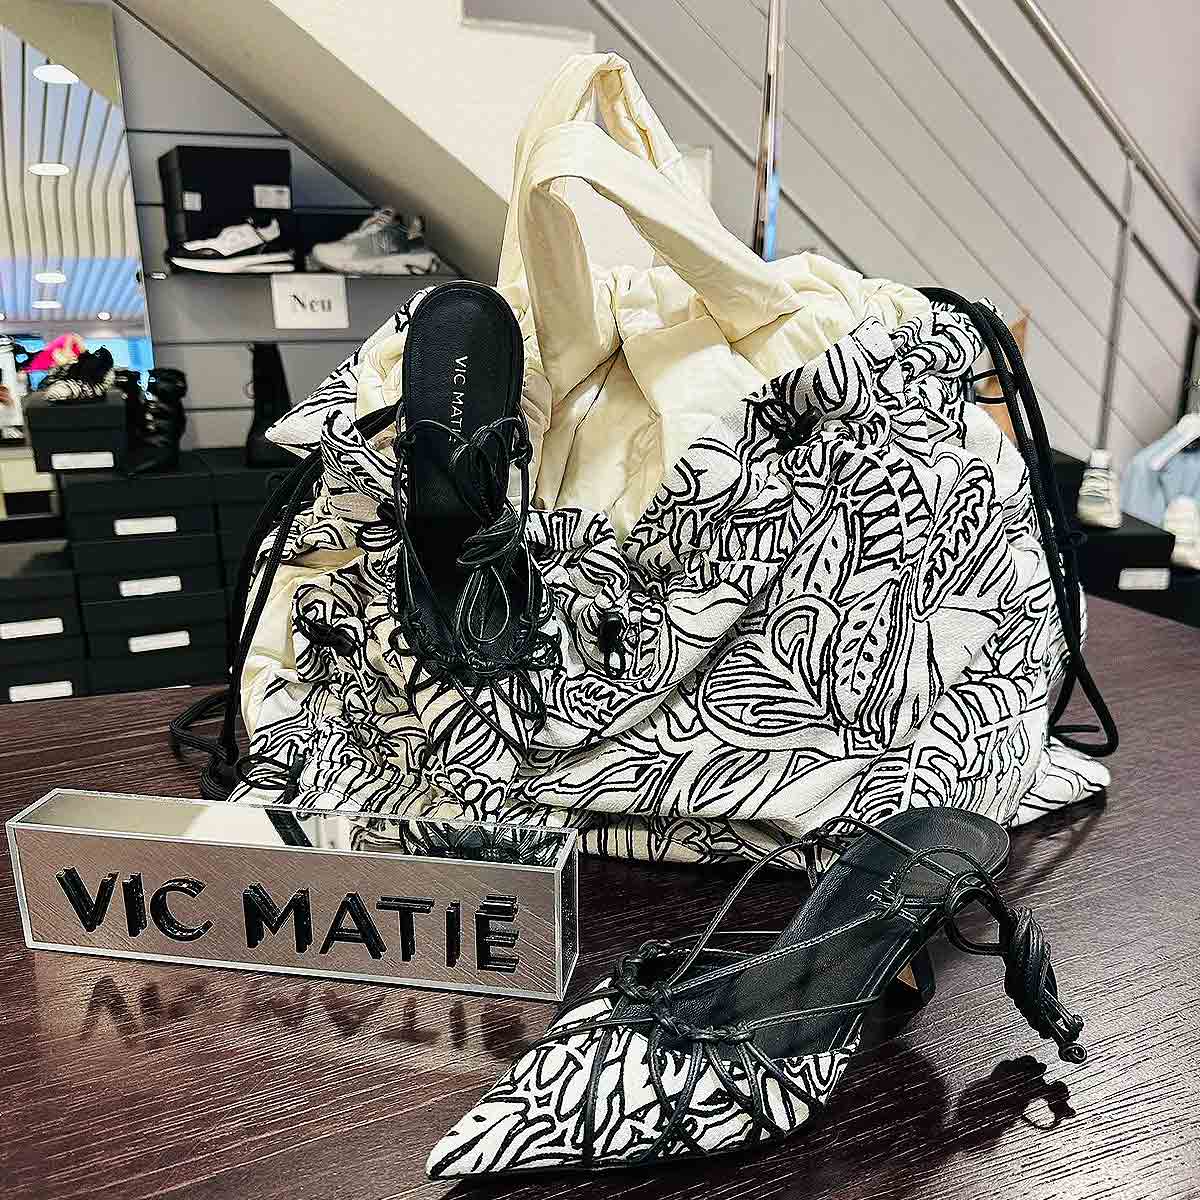 Schuhe und Tasche von VIC MATIÉ